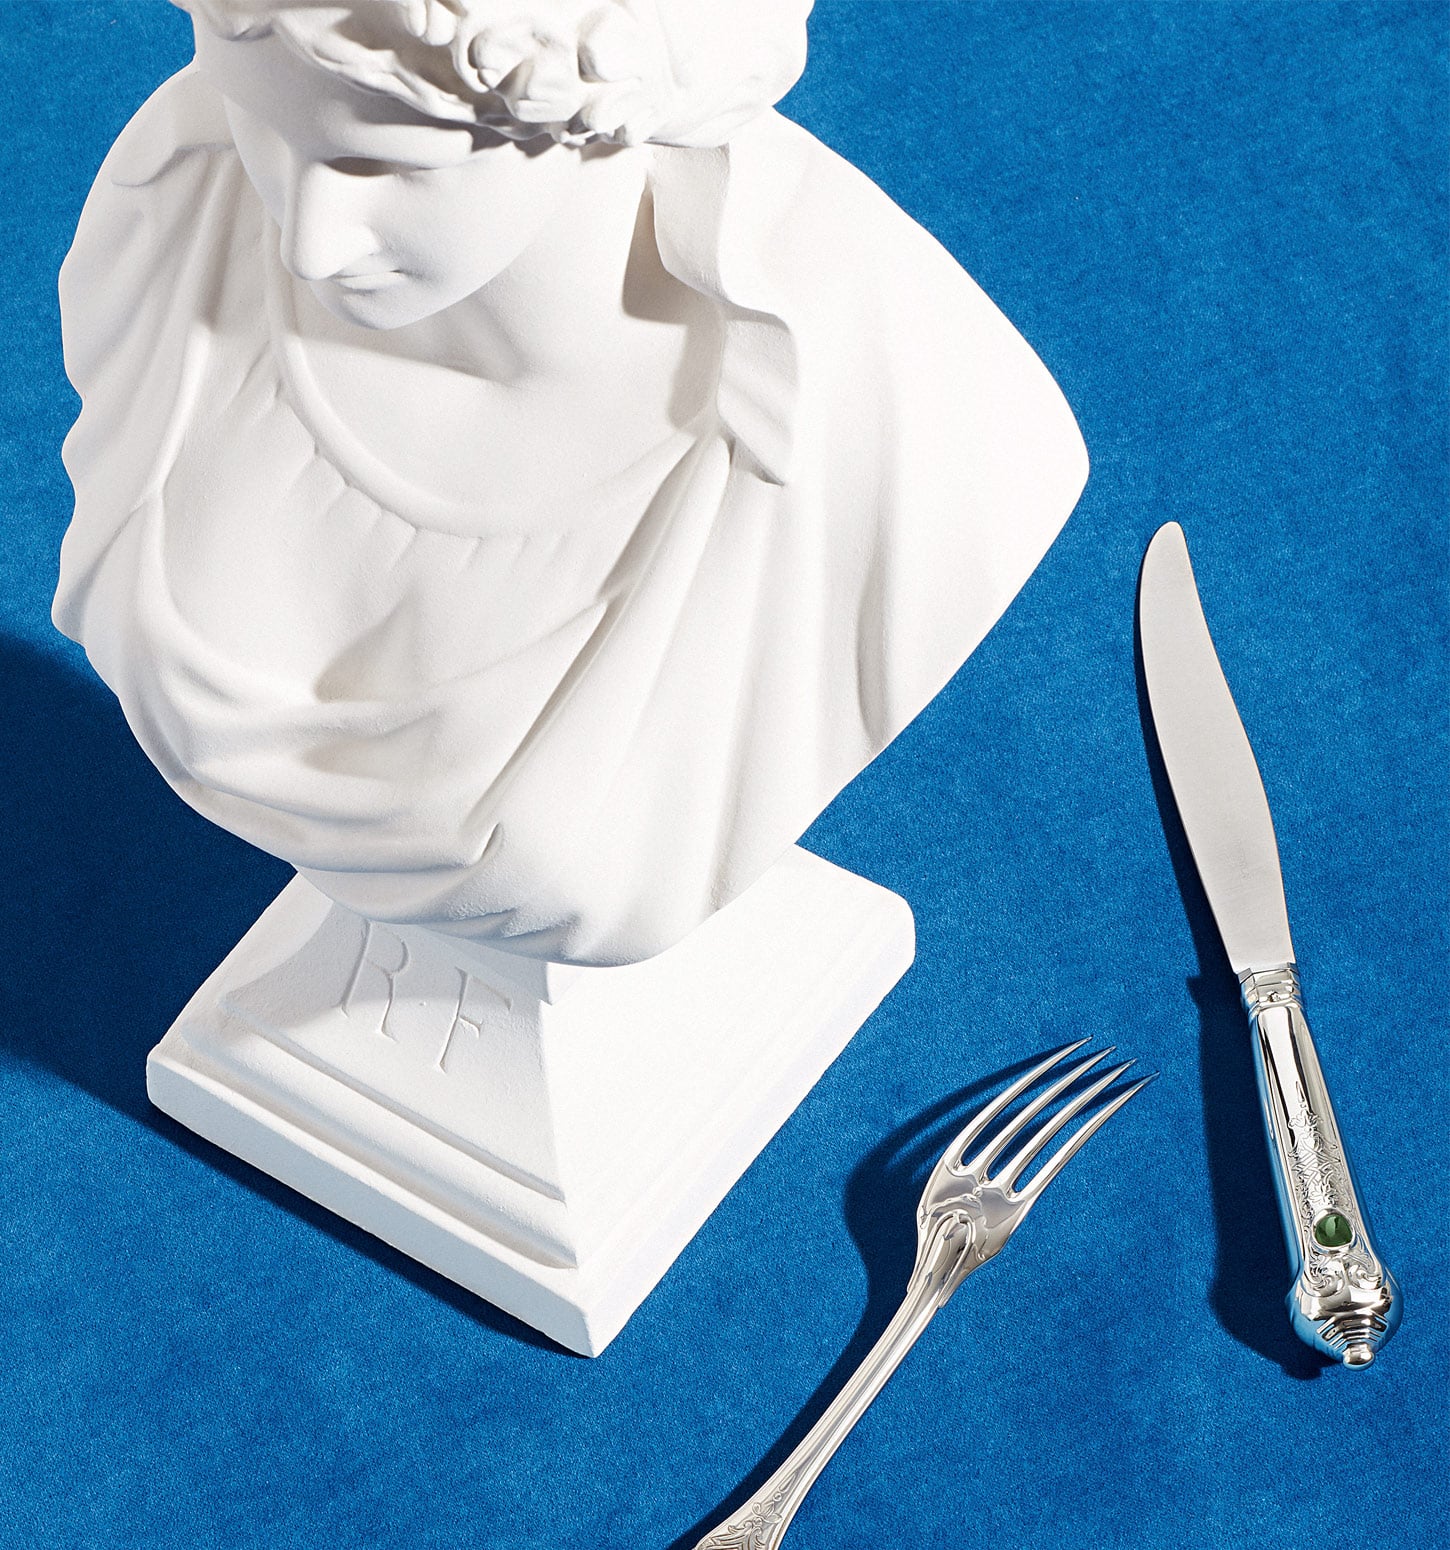 Fourchette et couteau de table de la collection Elysée photographiés sur un fond bleu à côté d'un buste de Marianne en symbole de la république française